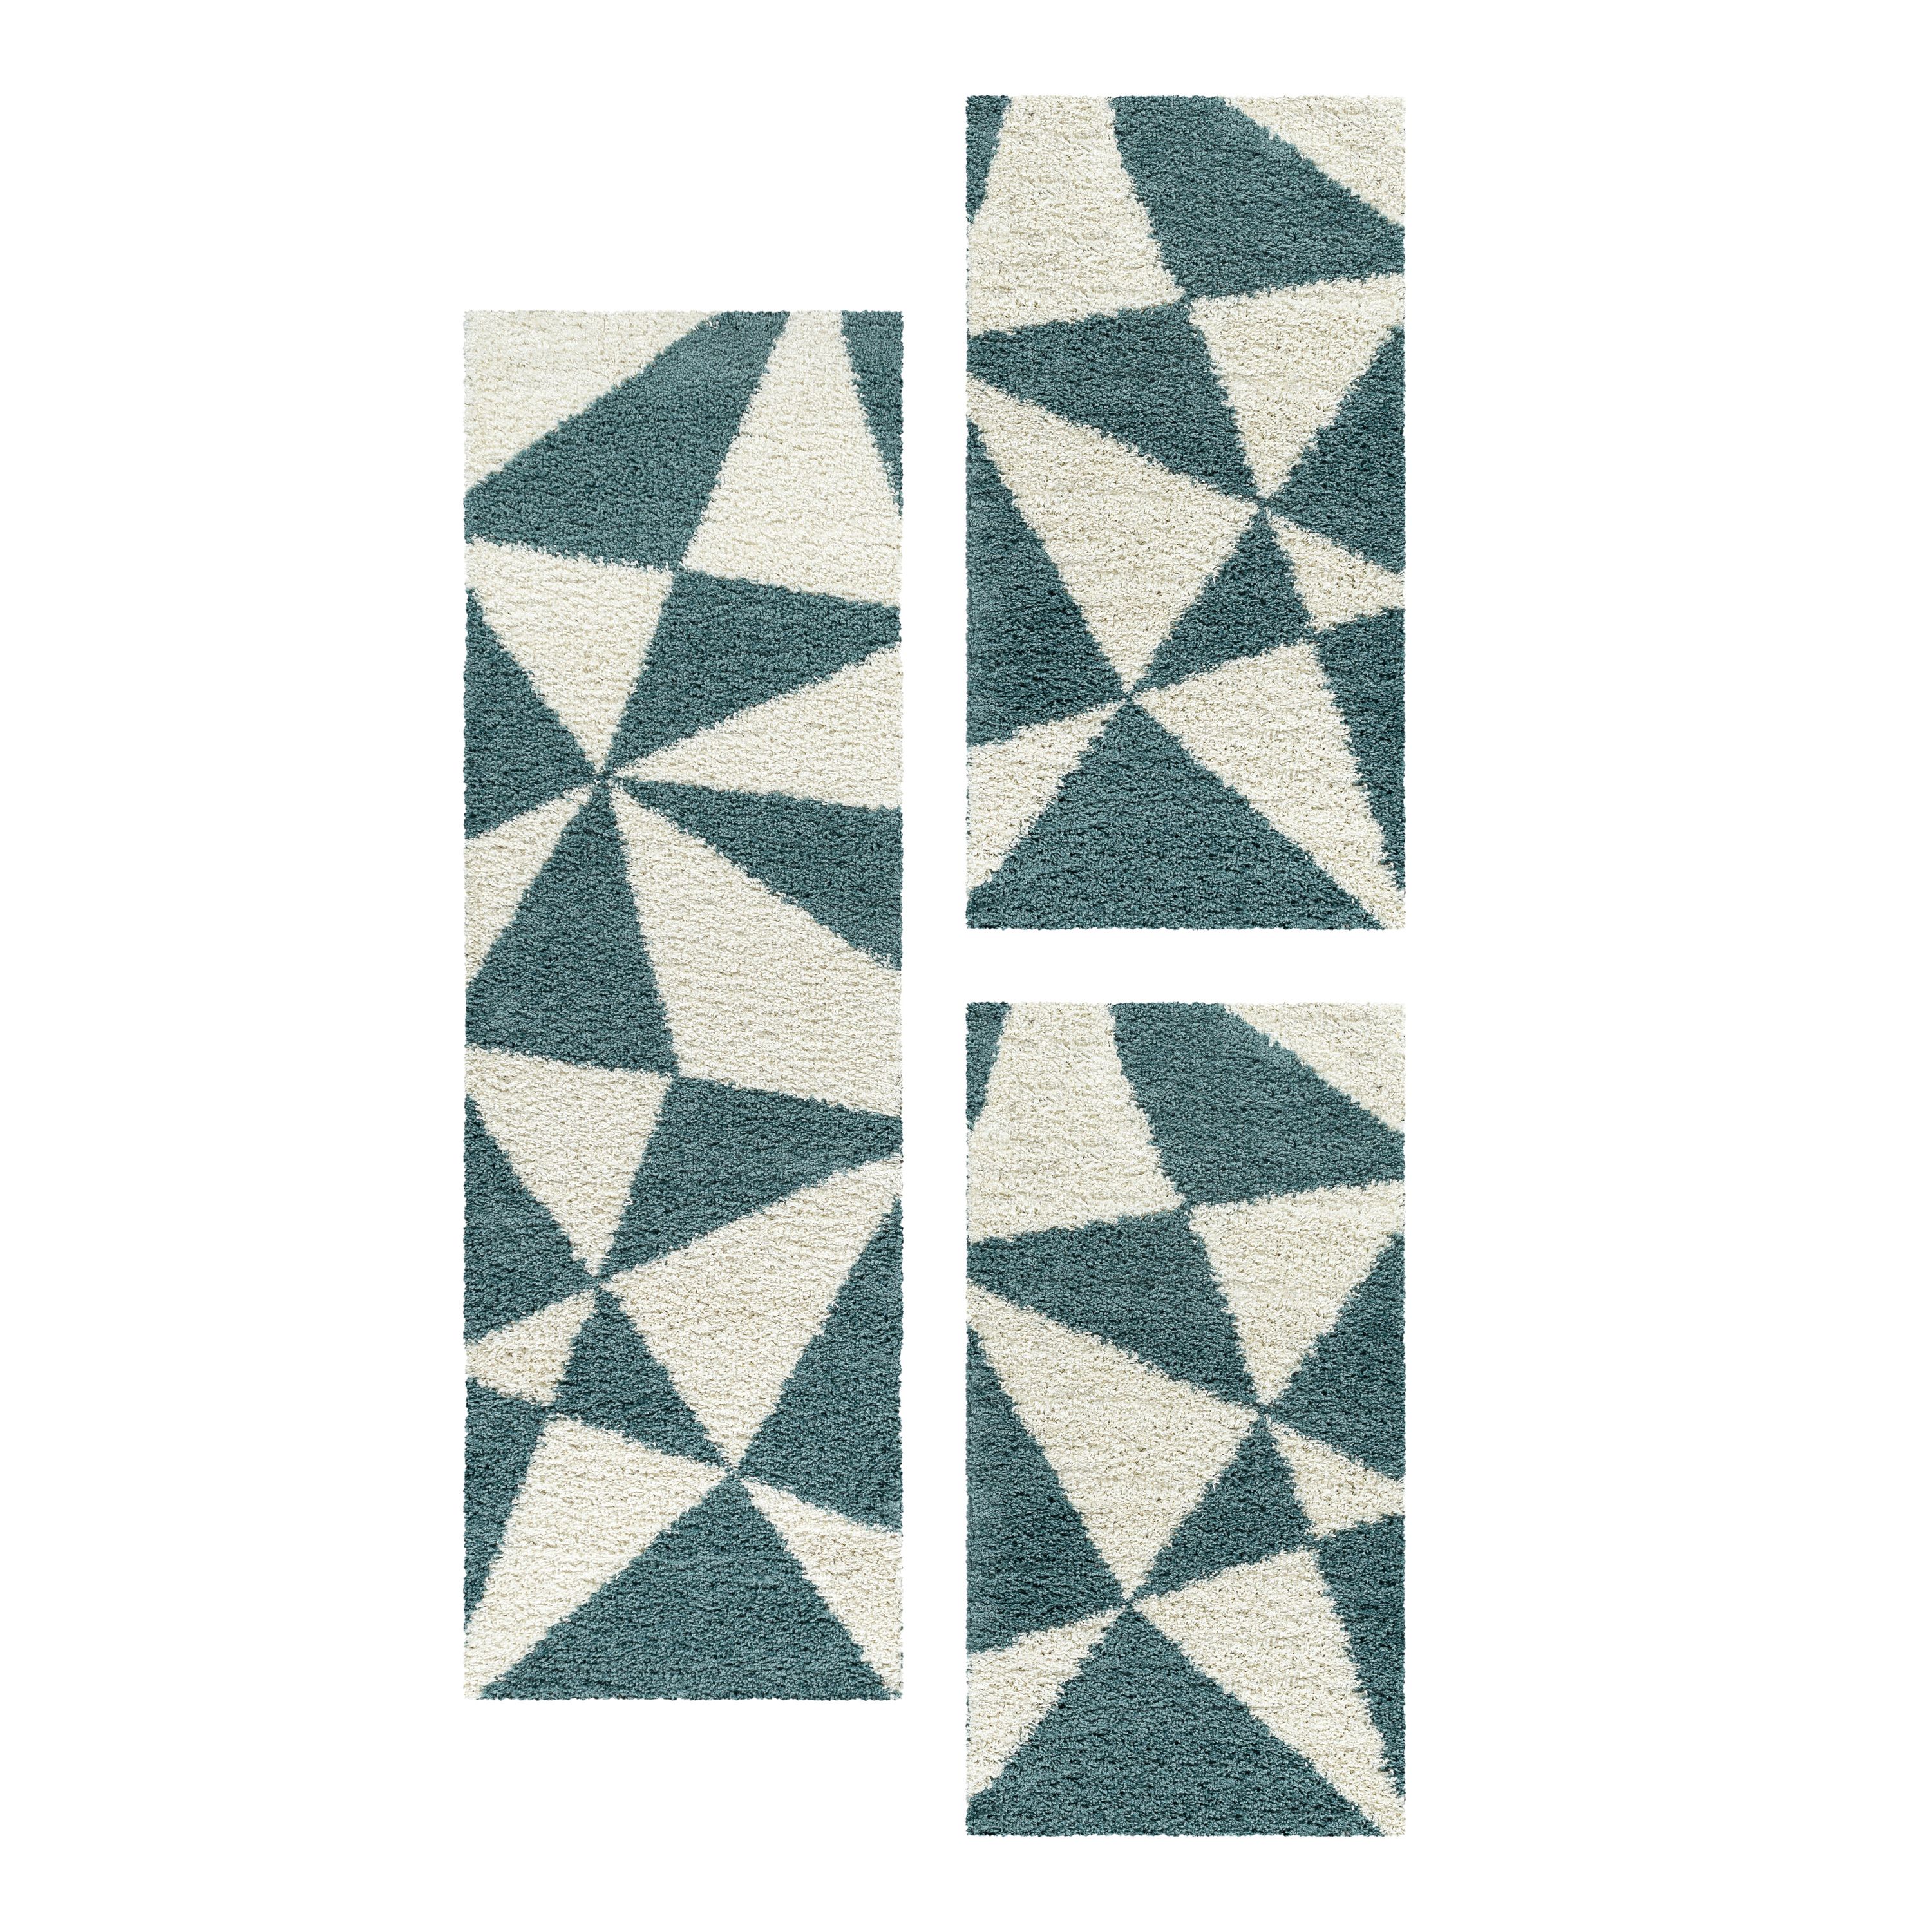 Design Teppich Set Shaggy Bettumrandung Läufer Set Muster Dreiecke 3 Teile Blau